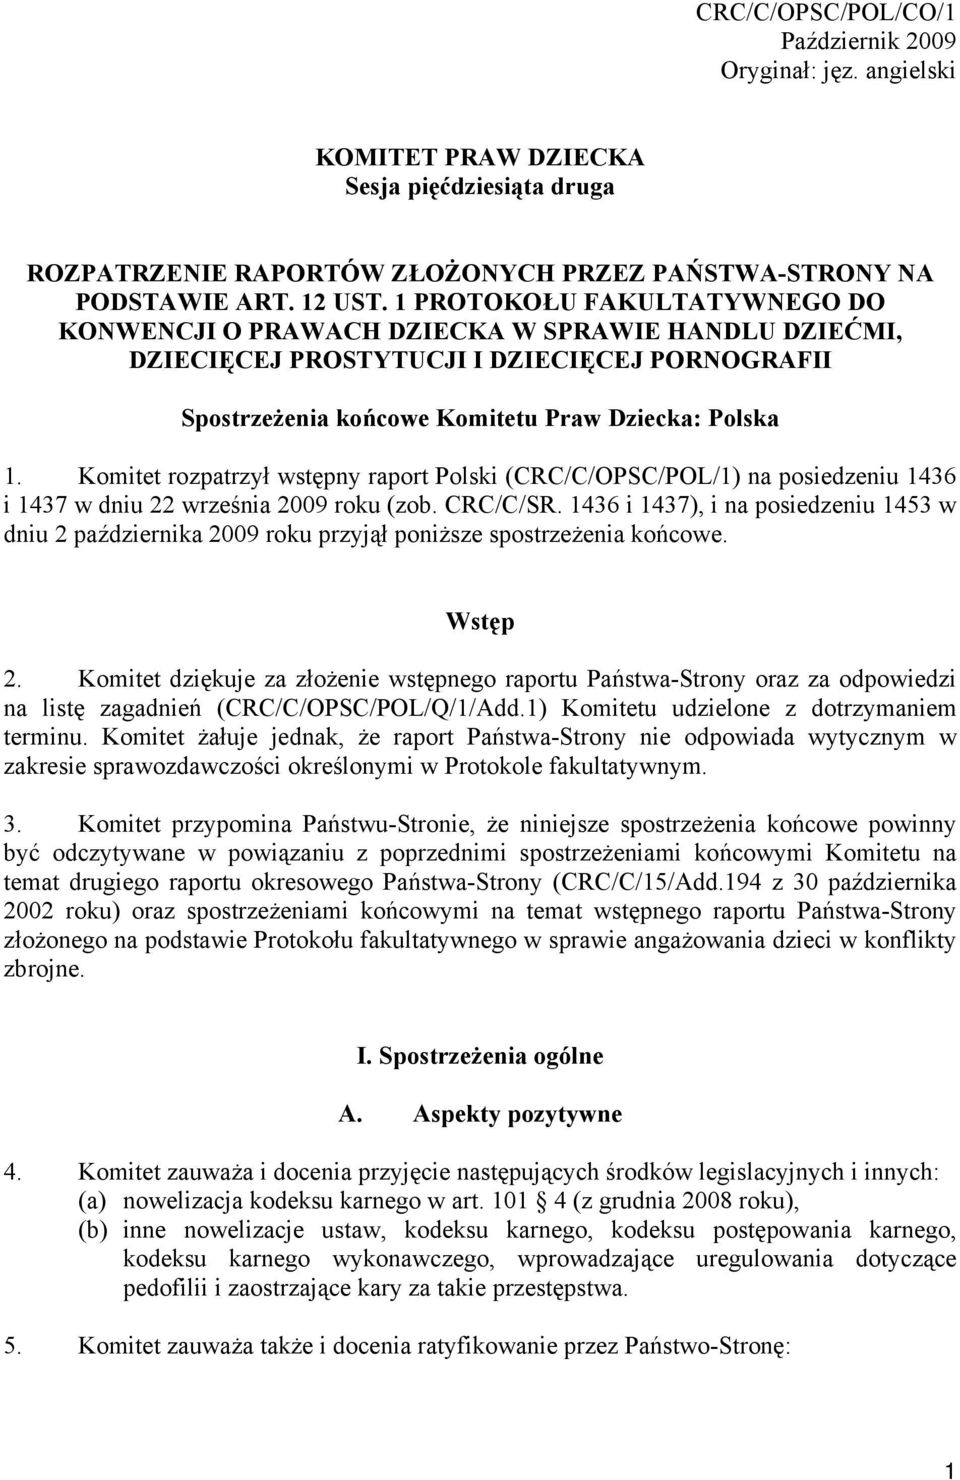 Komitet rozpatrzył wstępny raport Polski (CRC/C/OPSC/POL/1) na posiedzeniu 1436 i 1437 w dniu 22 września 2009 roku (zob. CRC/C/SR.